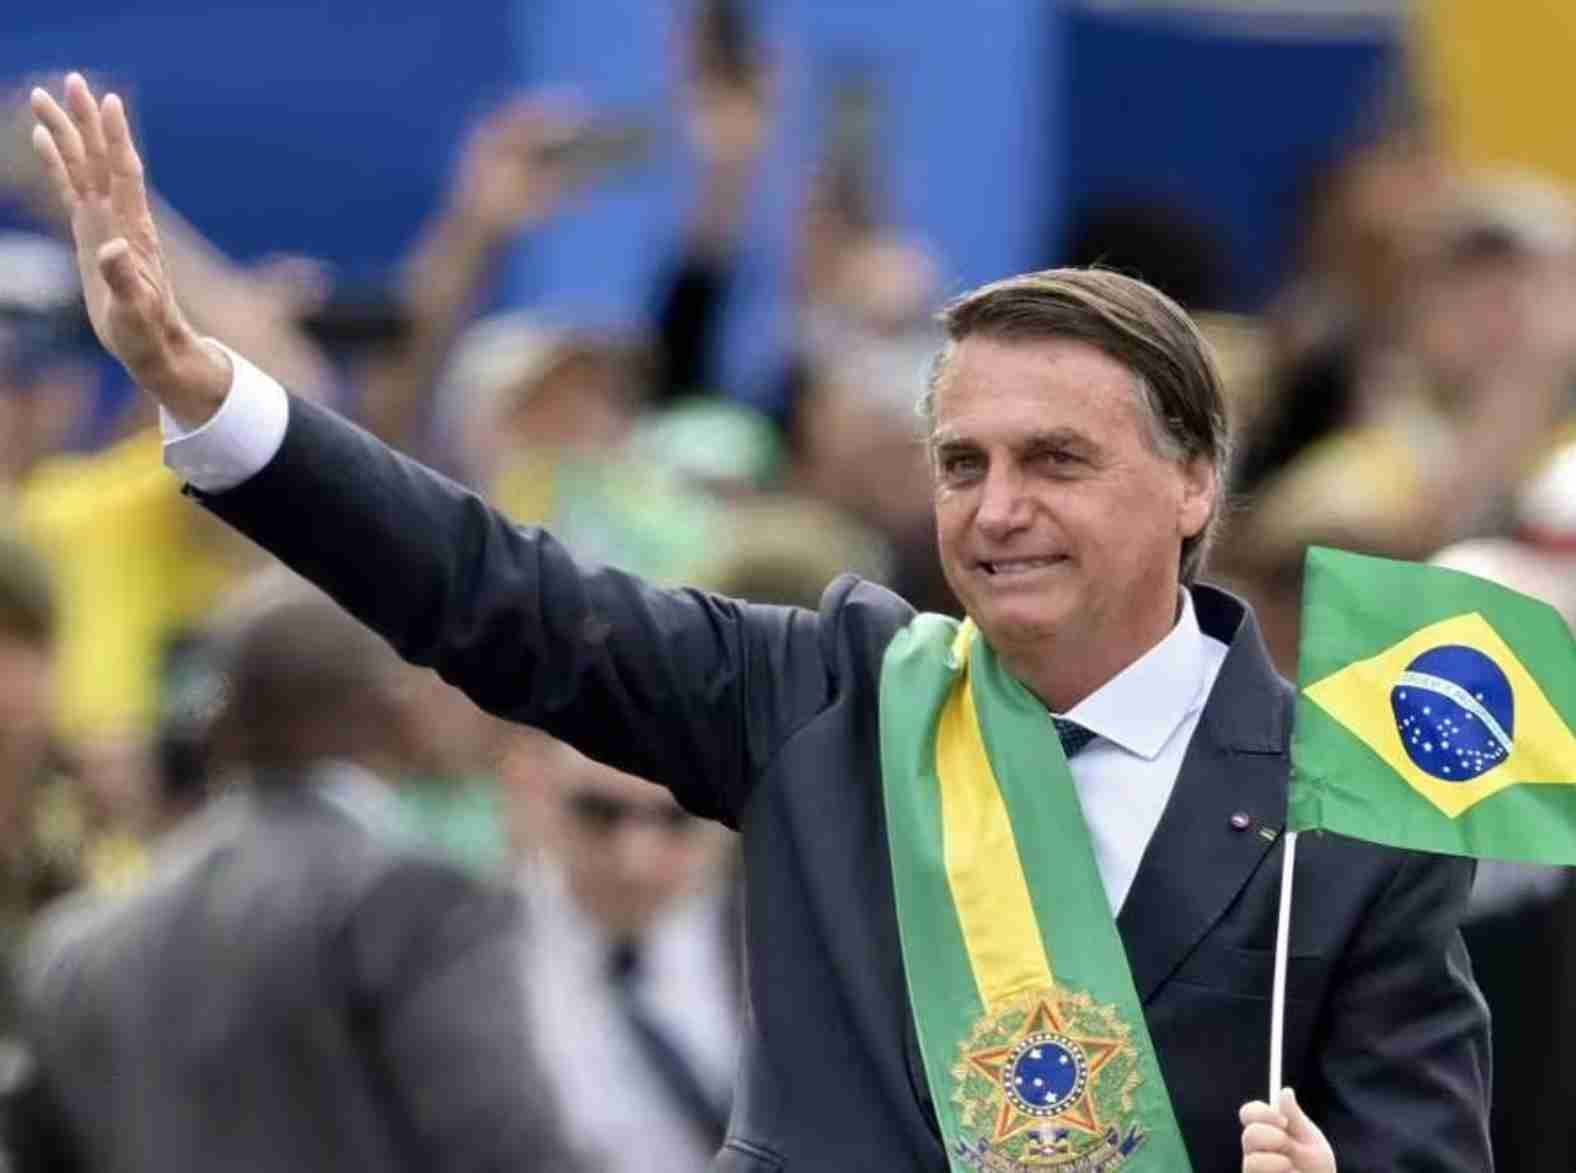 O crescimento conservador: Eleições de 2024 destacam a ascensão da direita no Brasil